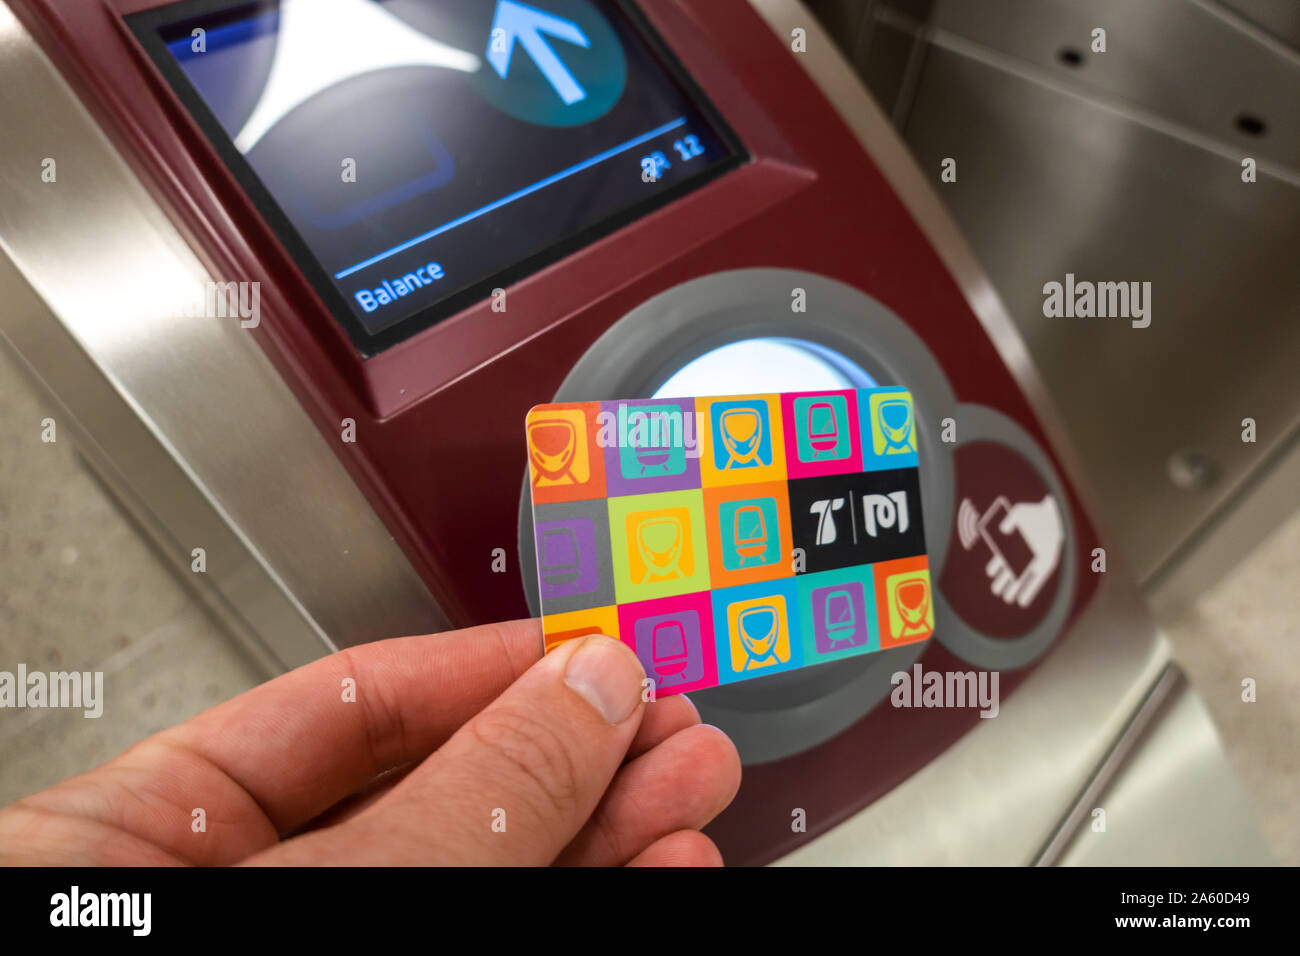 Die travel card Für die Tarife bei der Doha Metro in Katar zu bezahlen, über einem NFC-Lesegerät in den Toren präsentiert. Restbetrag auf dem Bildschirm angezeigt Stockfoto